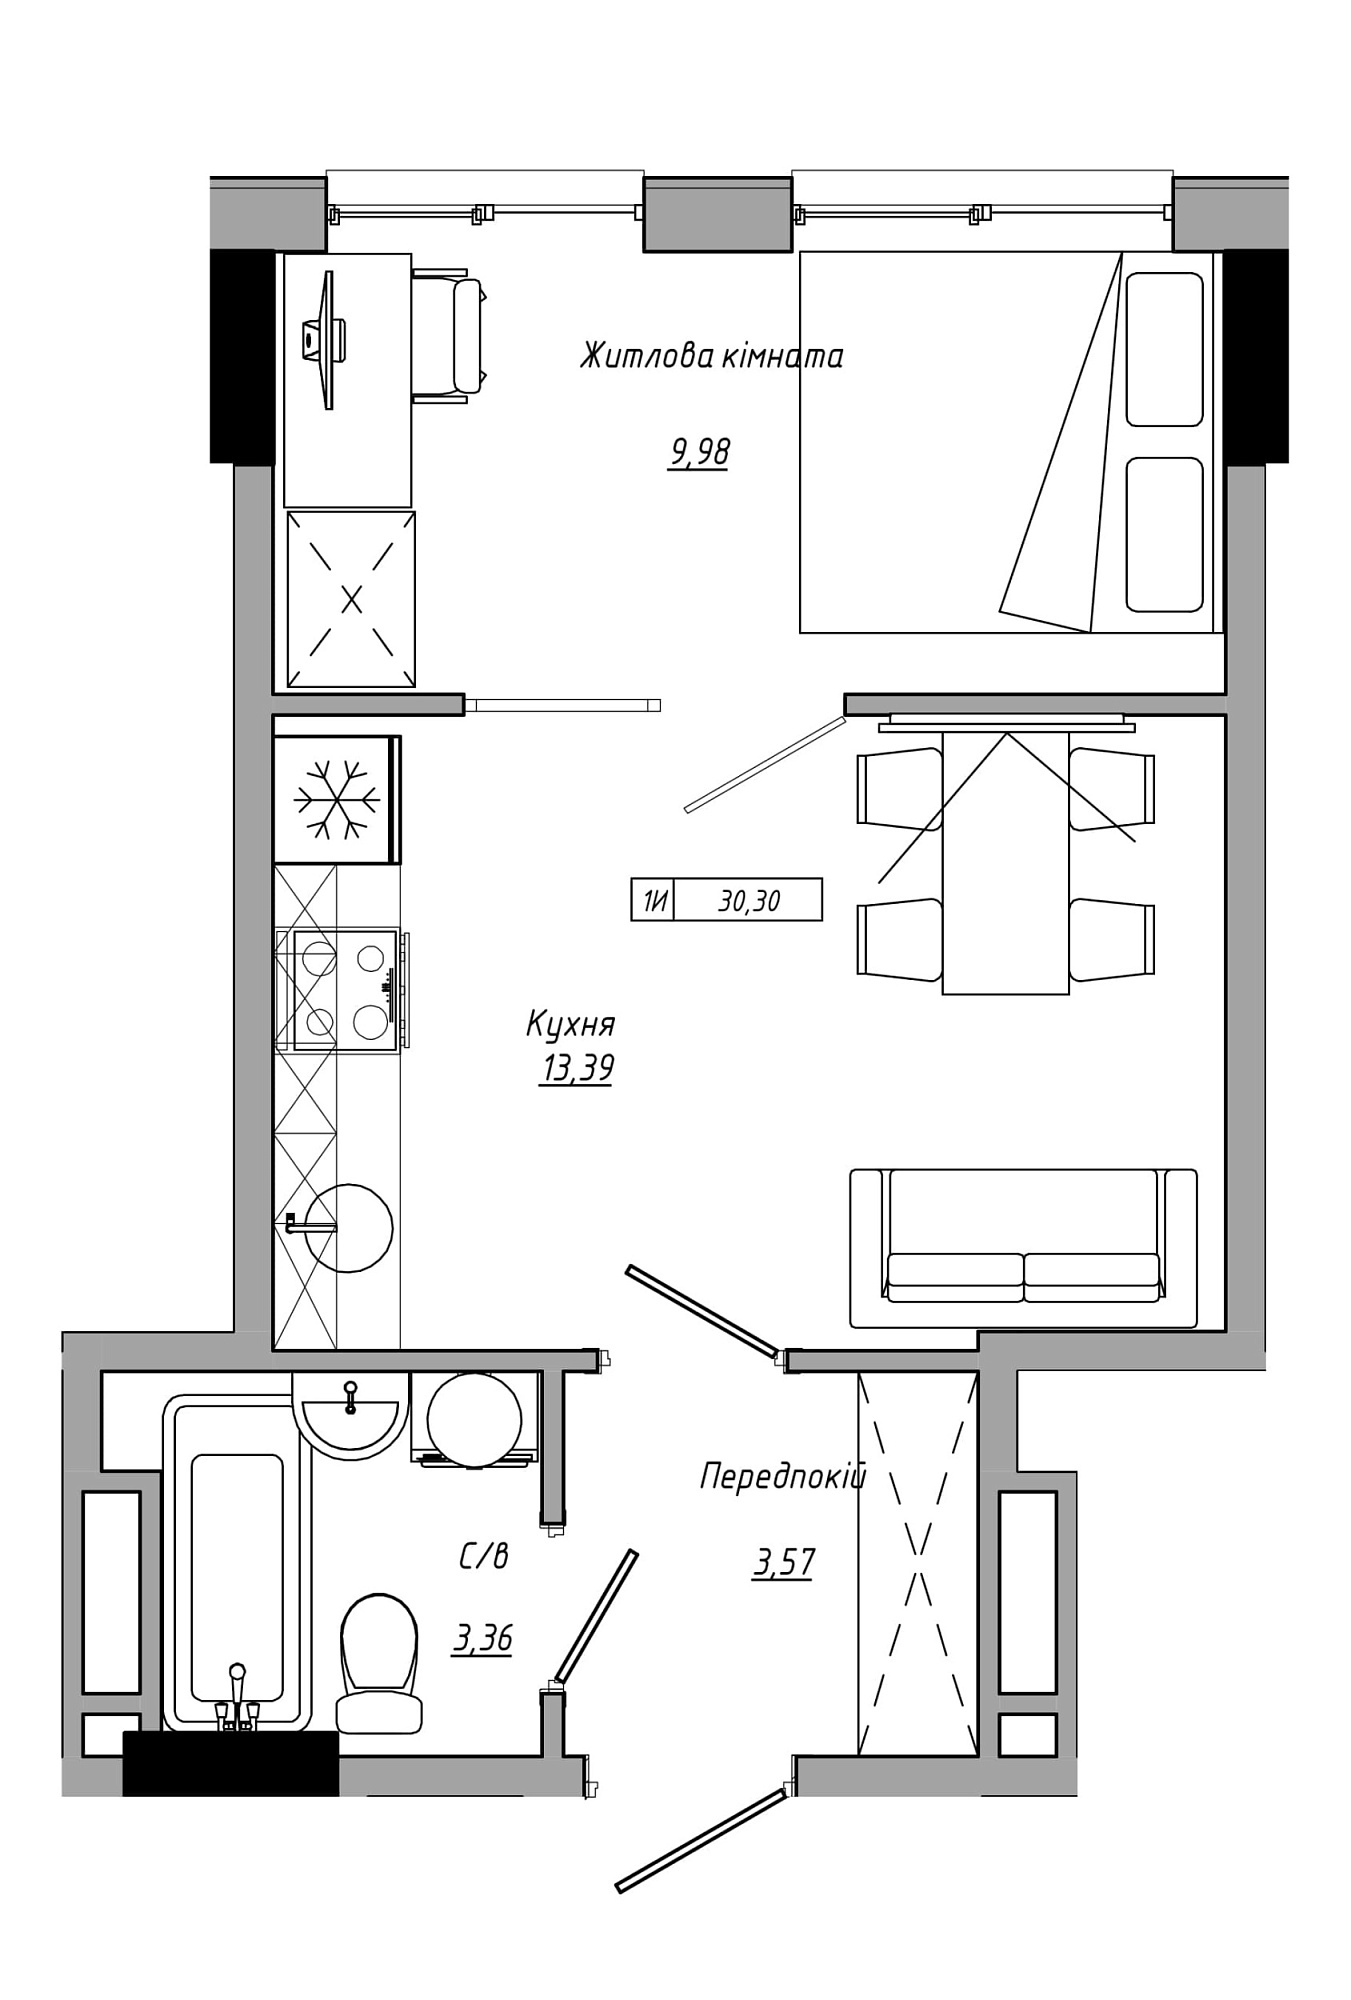 Планировка 1-к квартира площей 30.3м2, AB-21-07/00012.